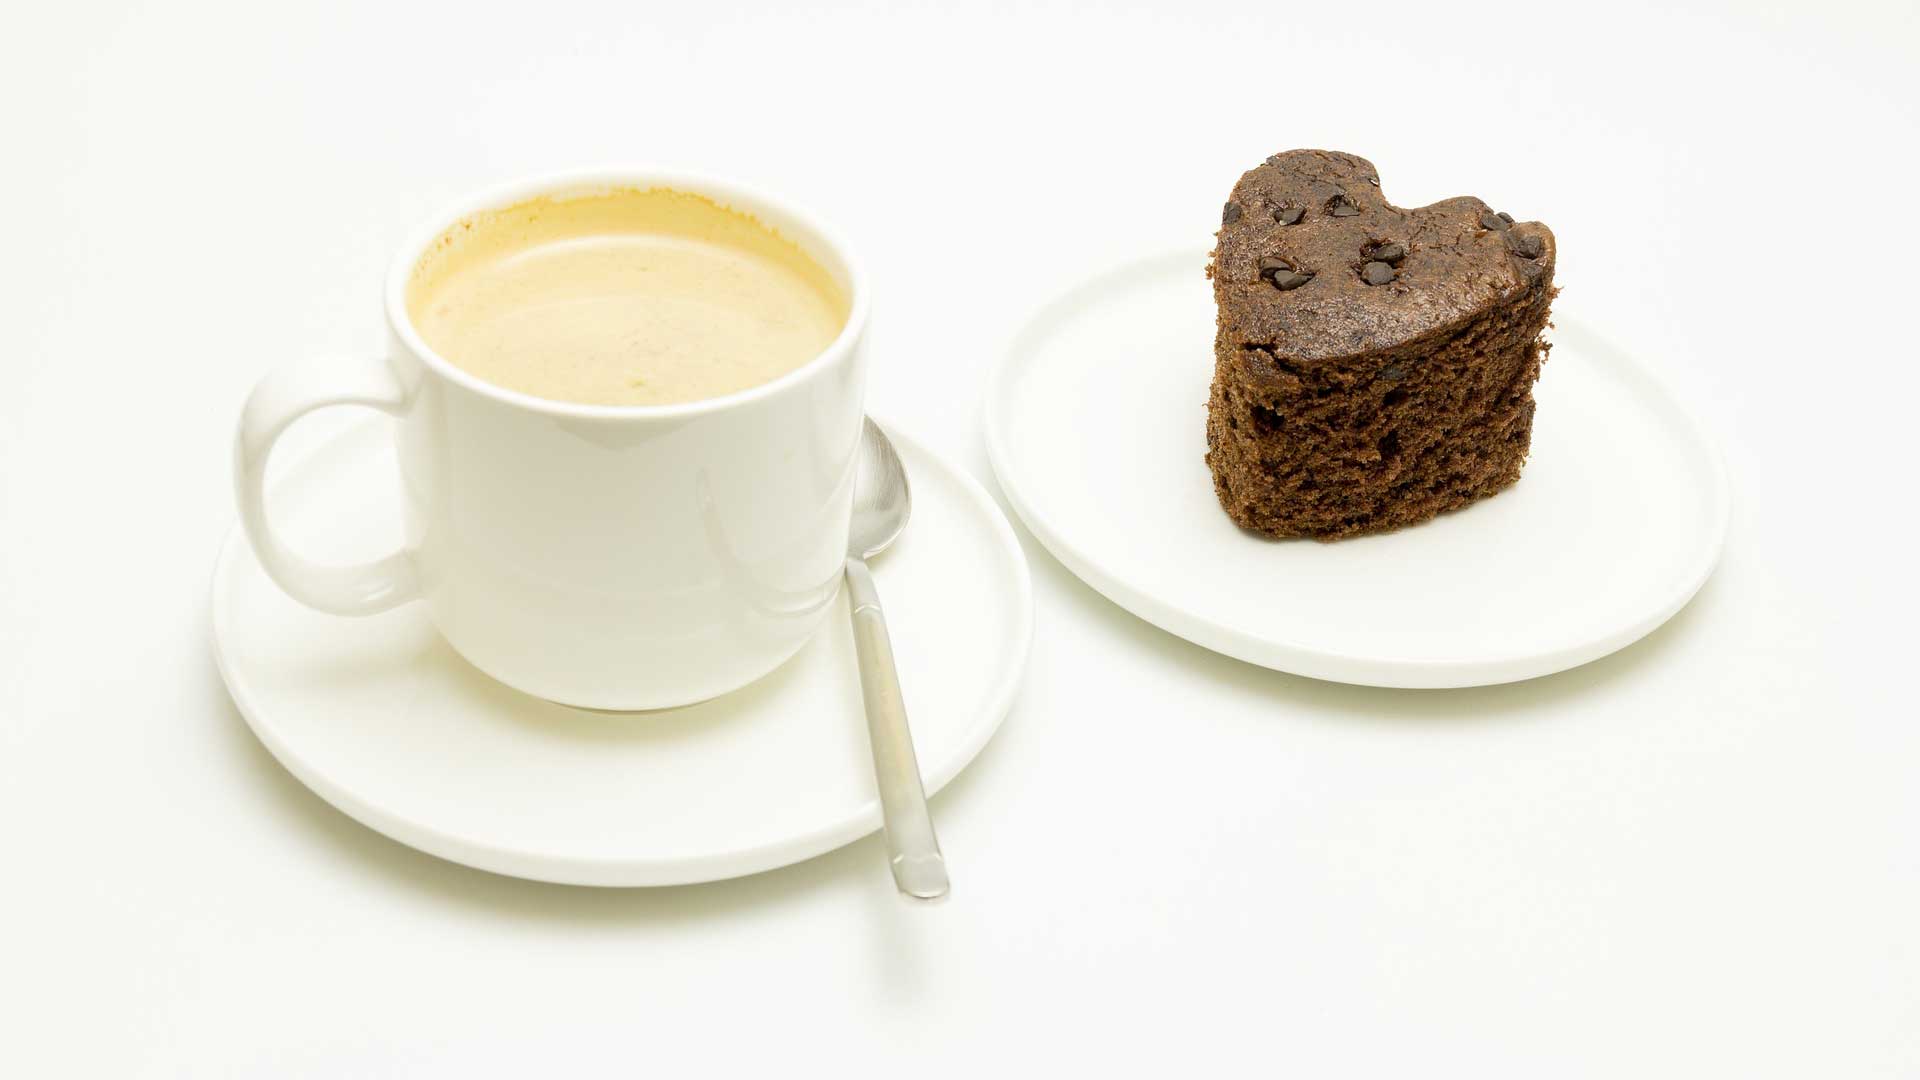 Doručak na bazi šećera/ugljikohidrata - Kava i slatko